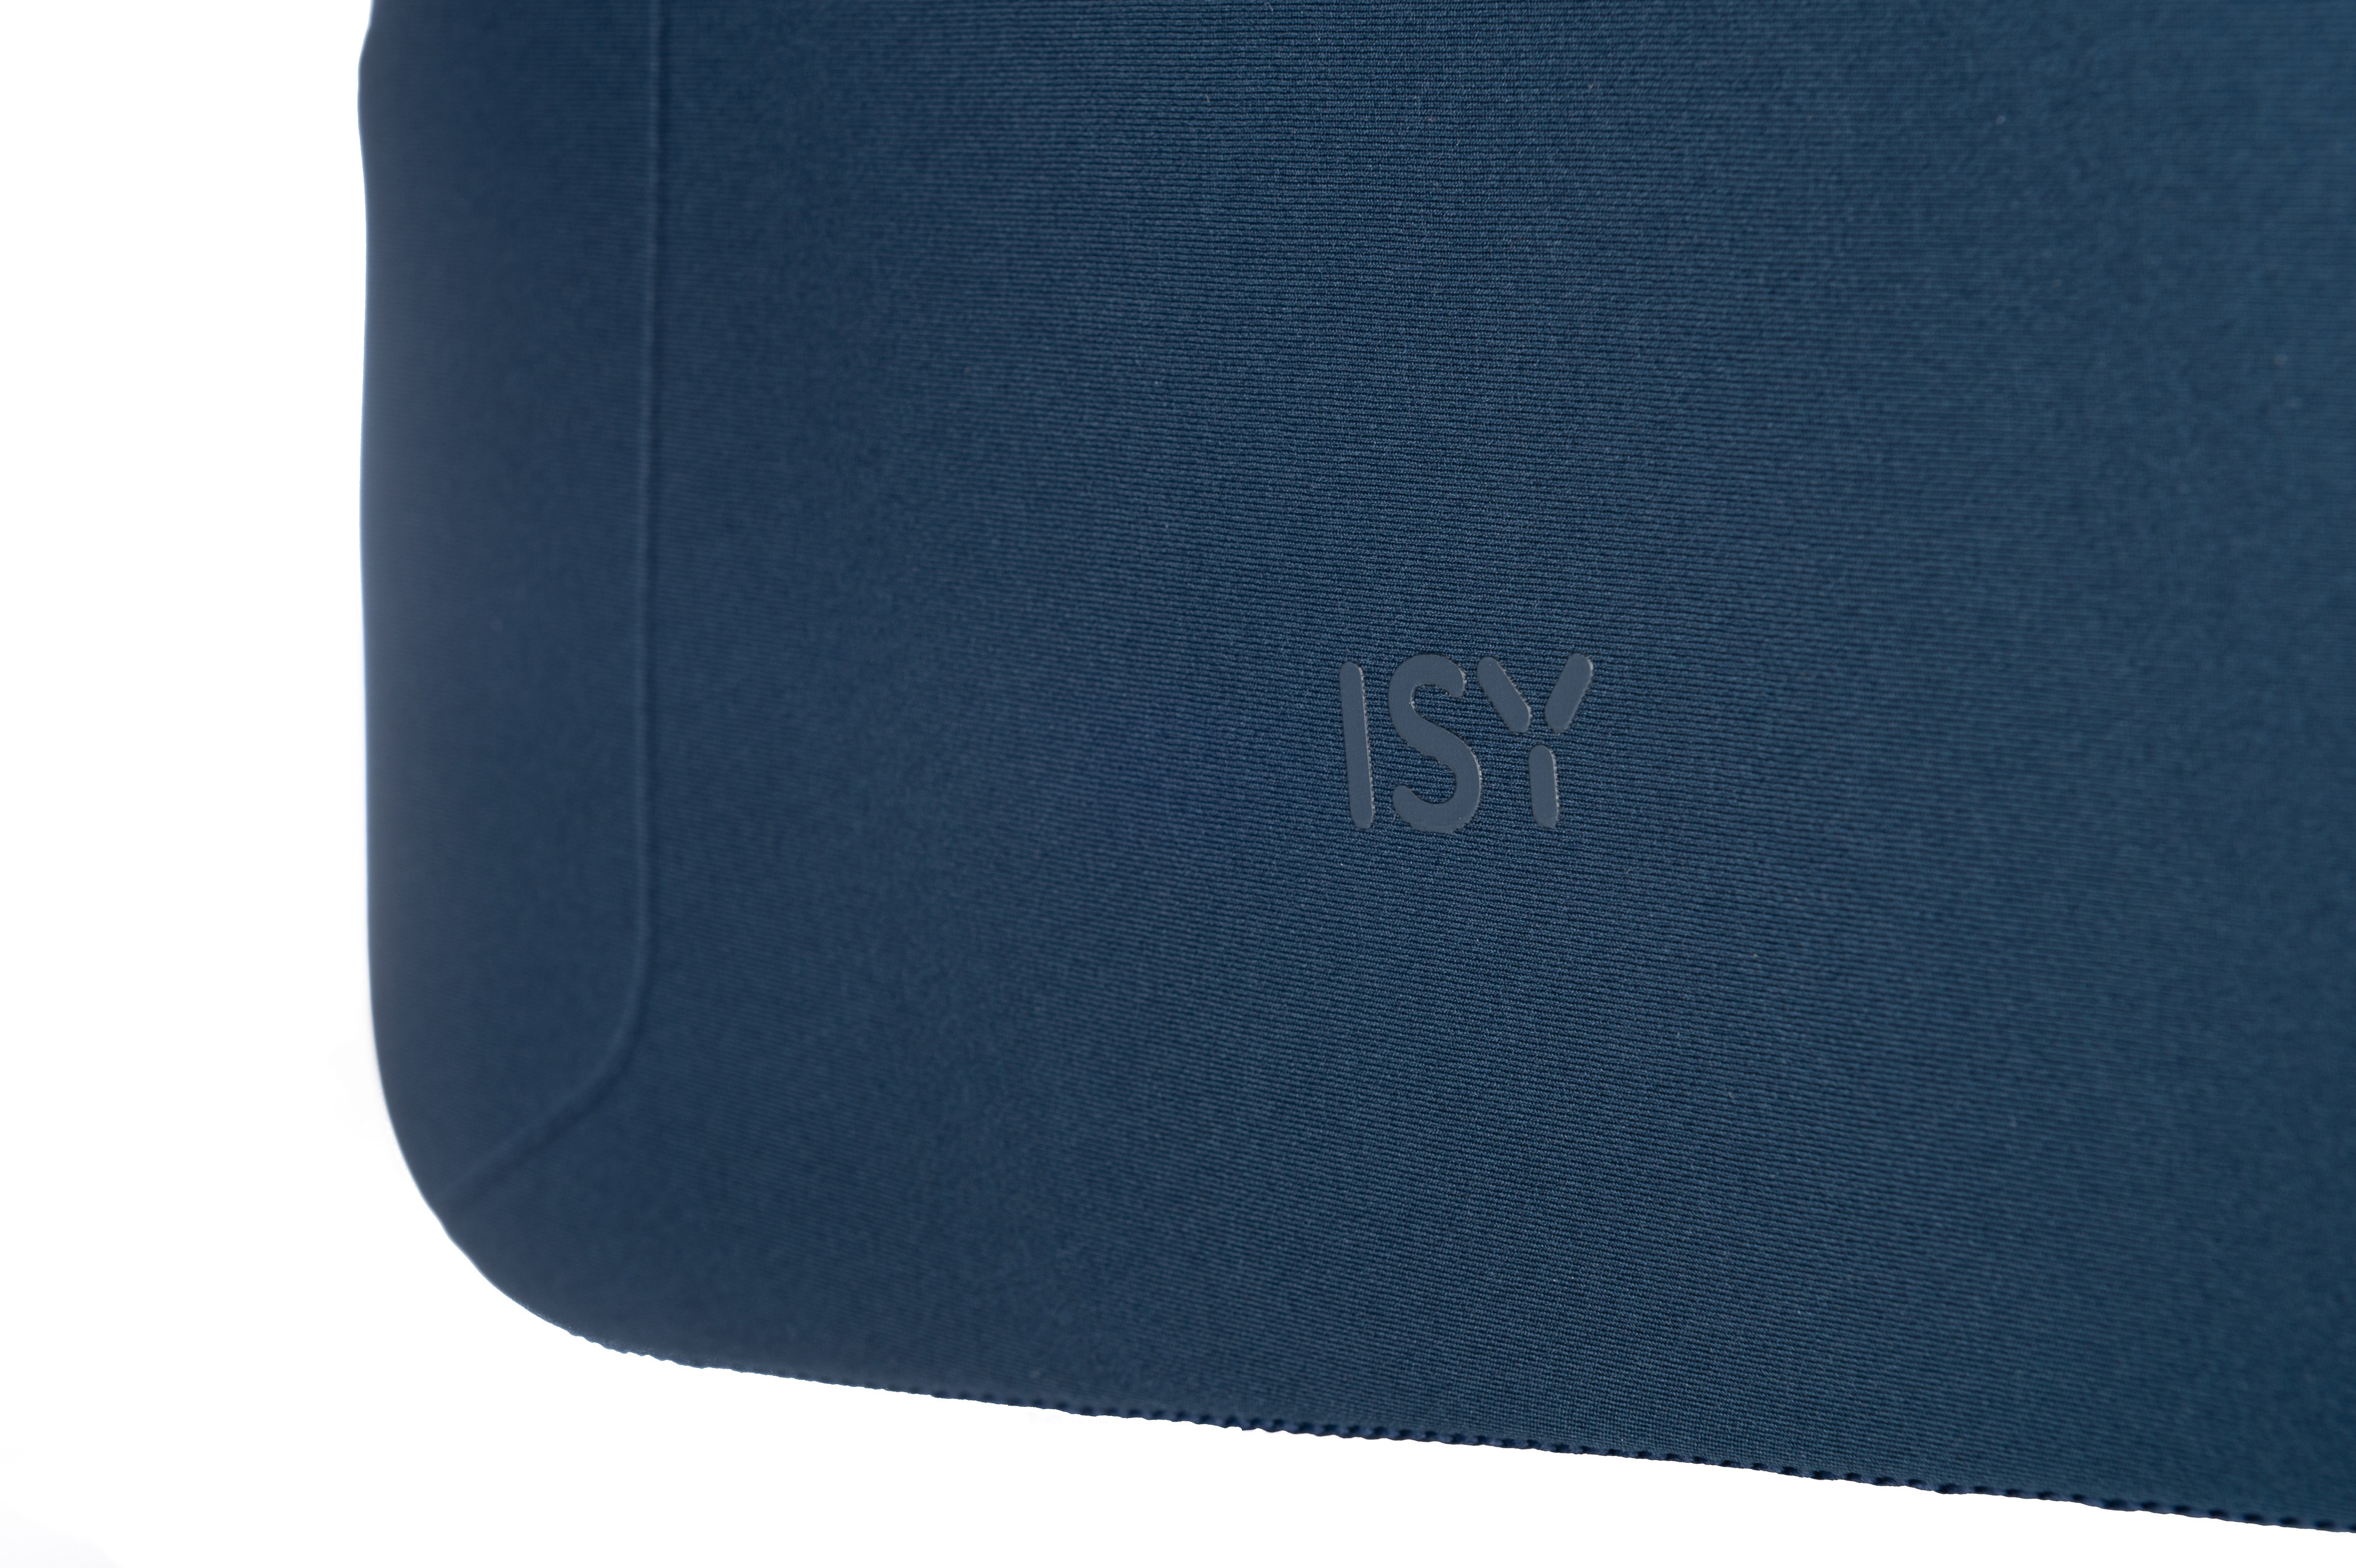 ISY INB-1560 100% Universal Sleeve Polyester, für Blau Notebooktasche